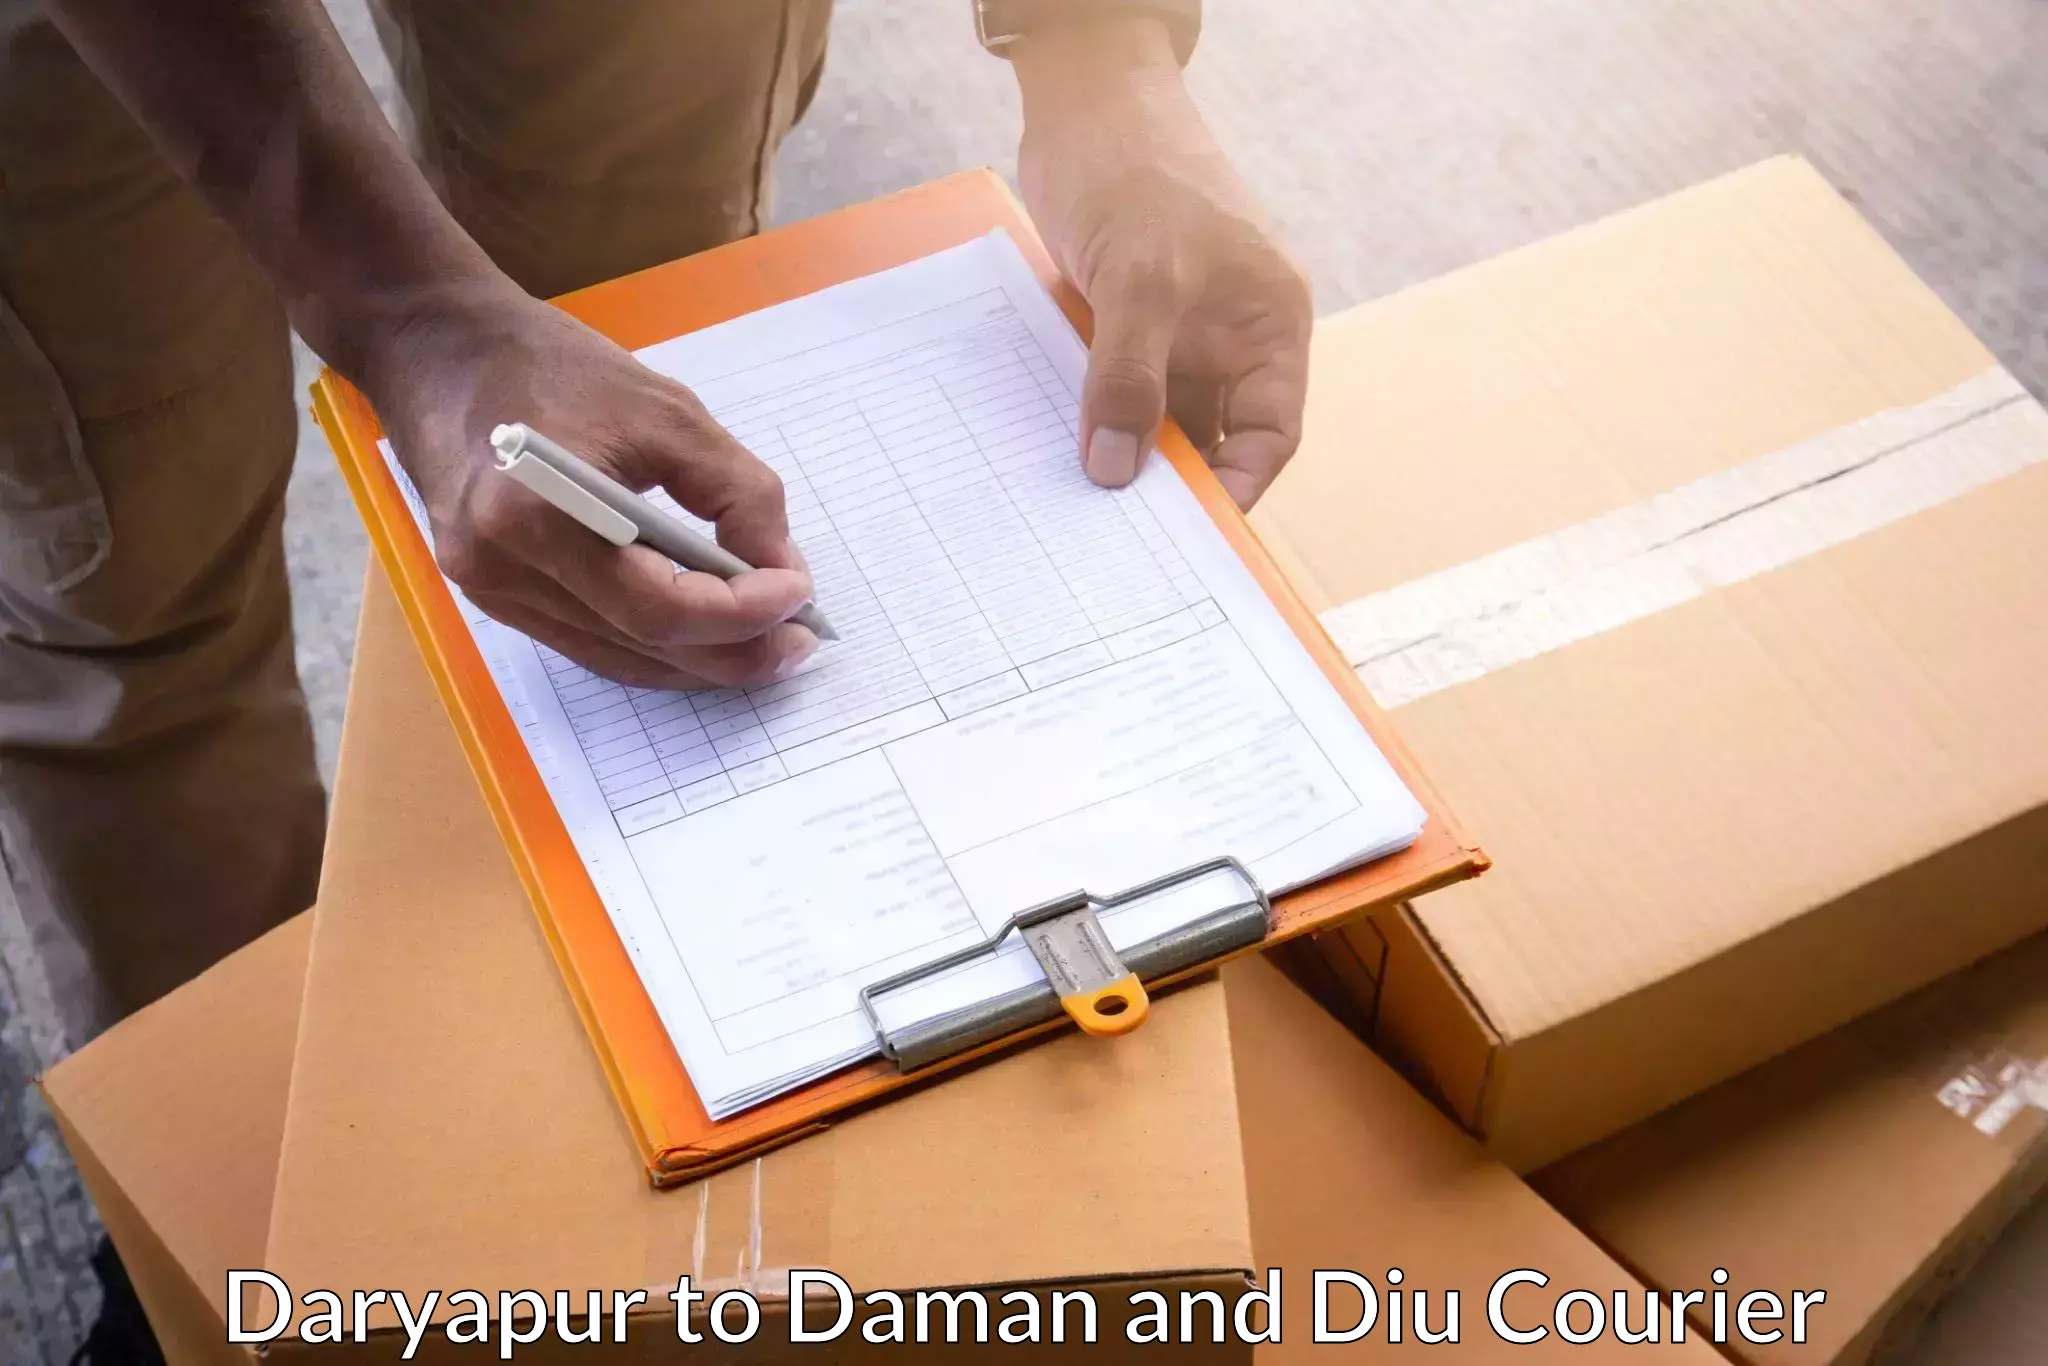 Express mail service Daryapur to Daman and Diu